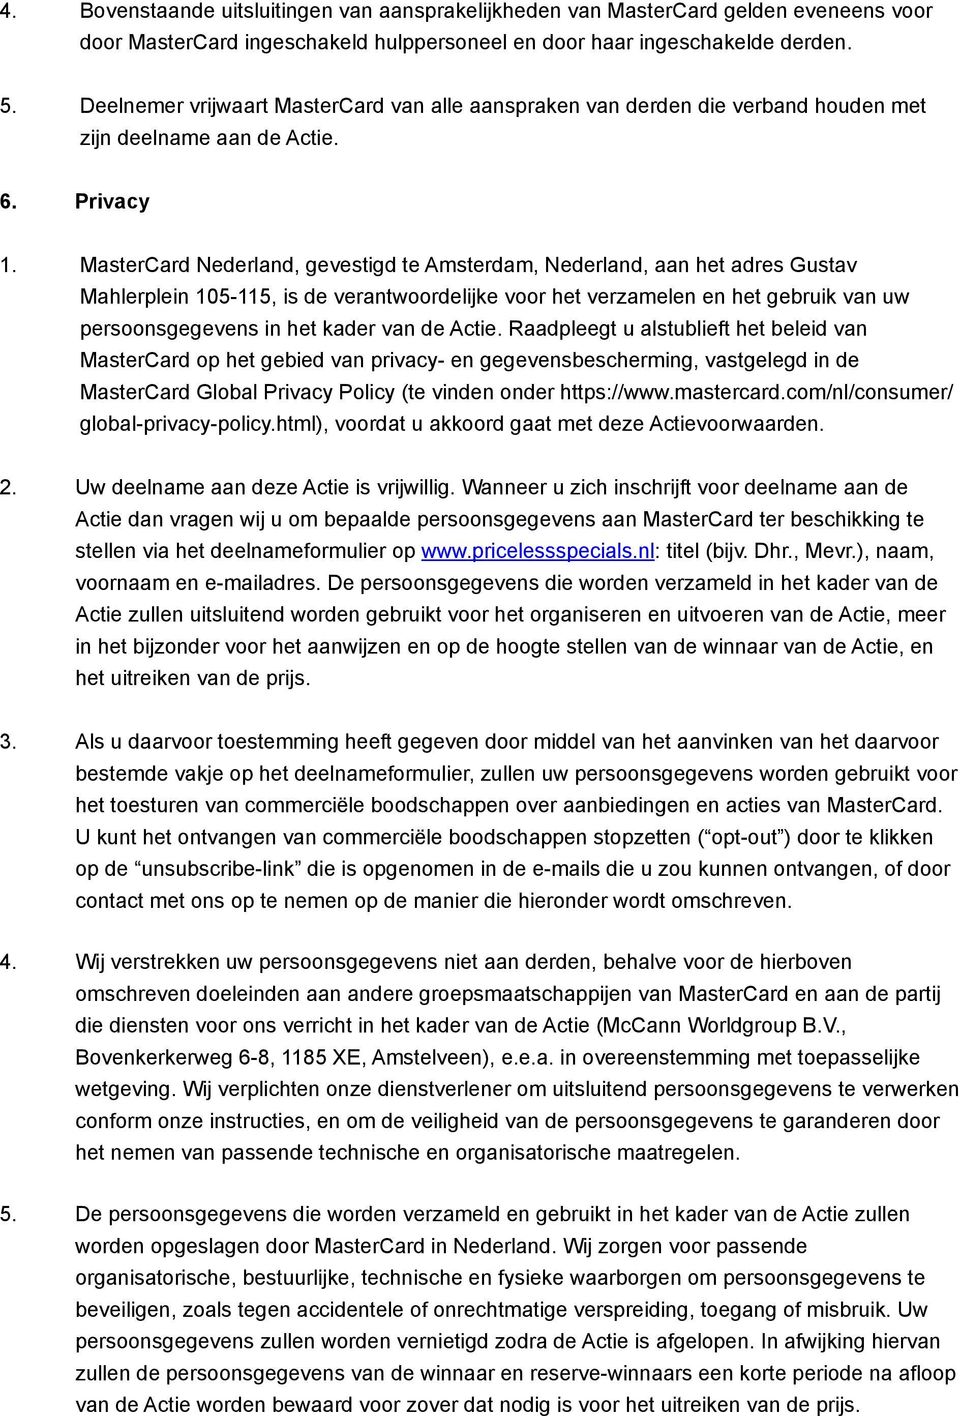 MasterCard Nederland, gevestigd te Amsterdam, Nederland, aan het adres Gustav Mahlerplein 105-115, is de verantwoordelijke voor het verzamelen en het gebruik van uw persoonsgegevens in het kader van